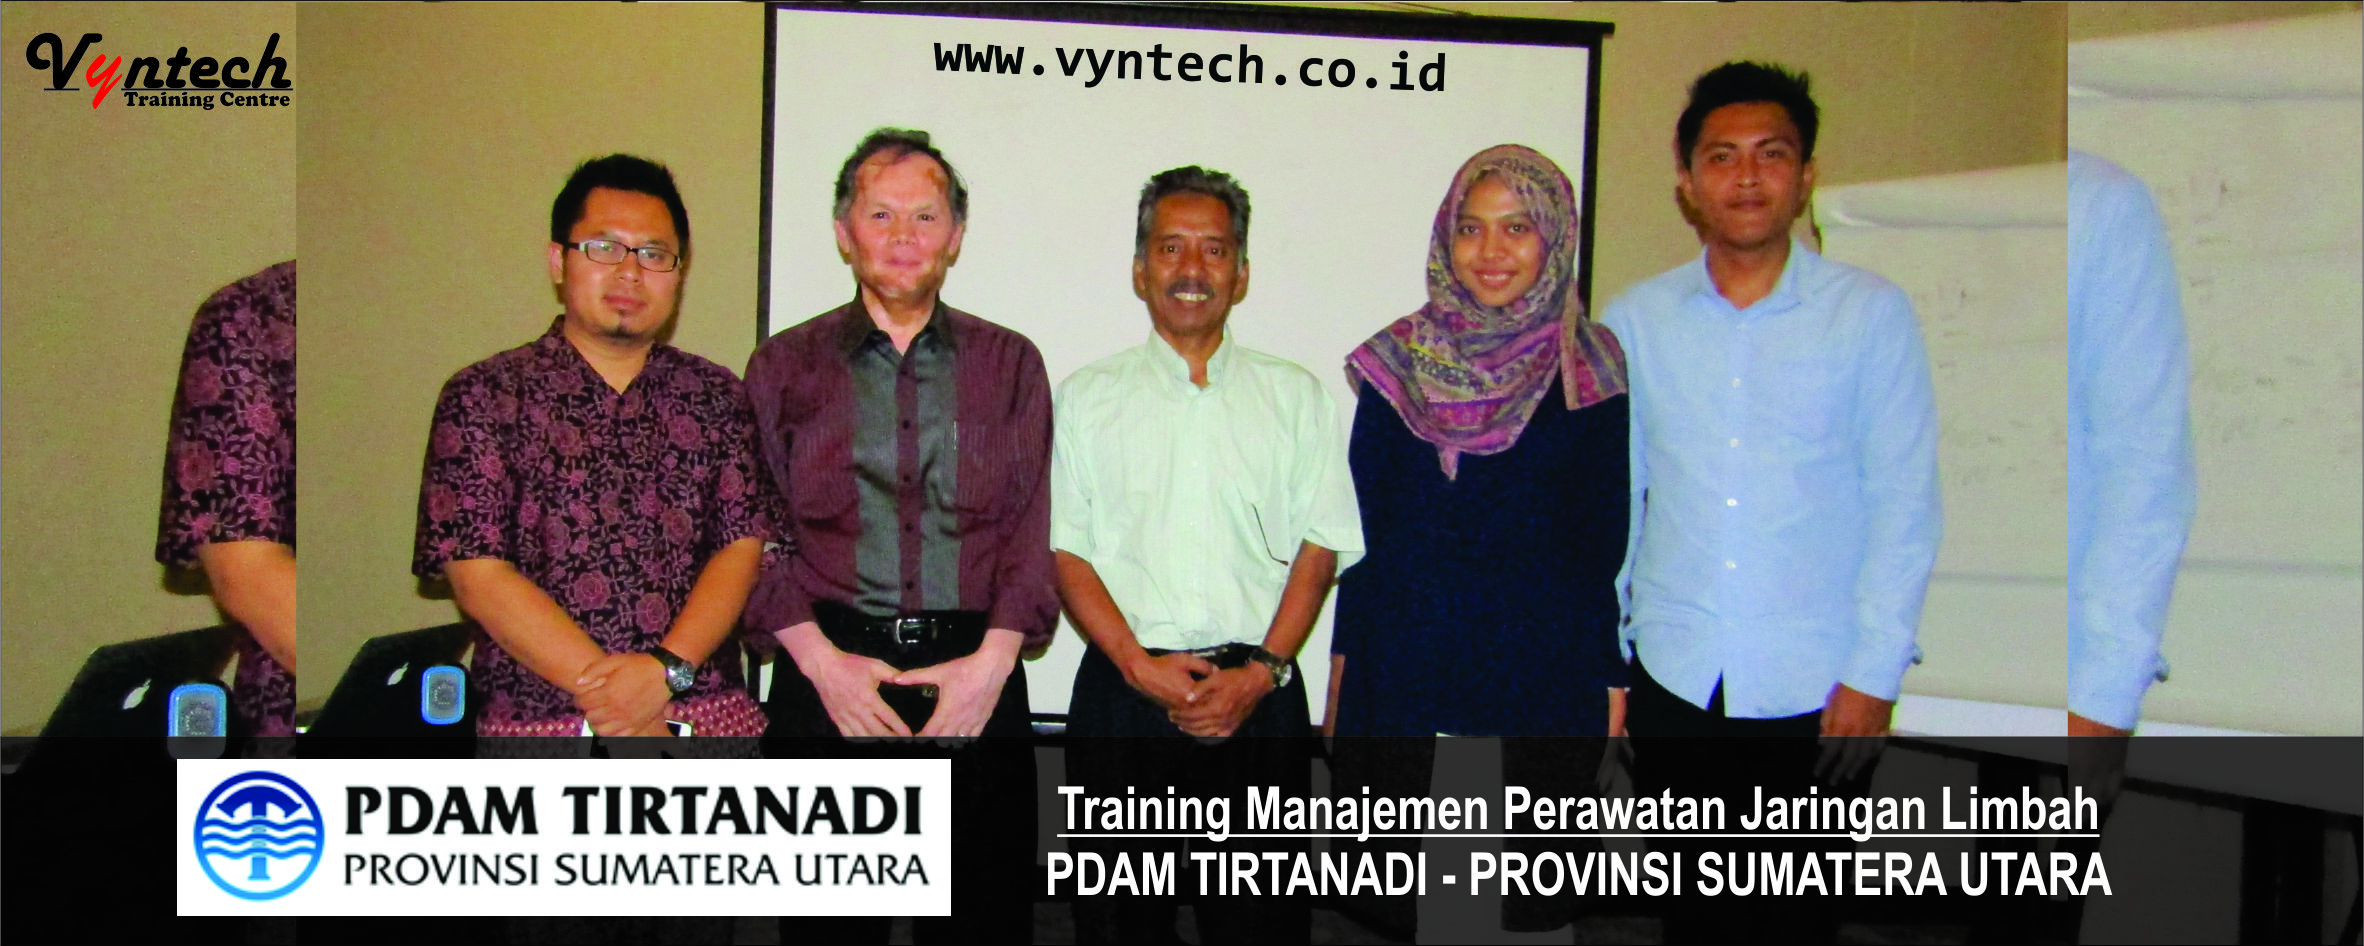 20170419 Training Manajemen Perawatan Jaringan Limbah - PDAM TIRTANADI - PROVINSI SUMATERA UTARA Medan, di Bandung